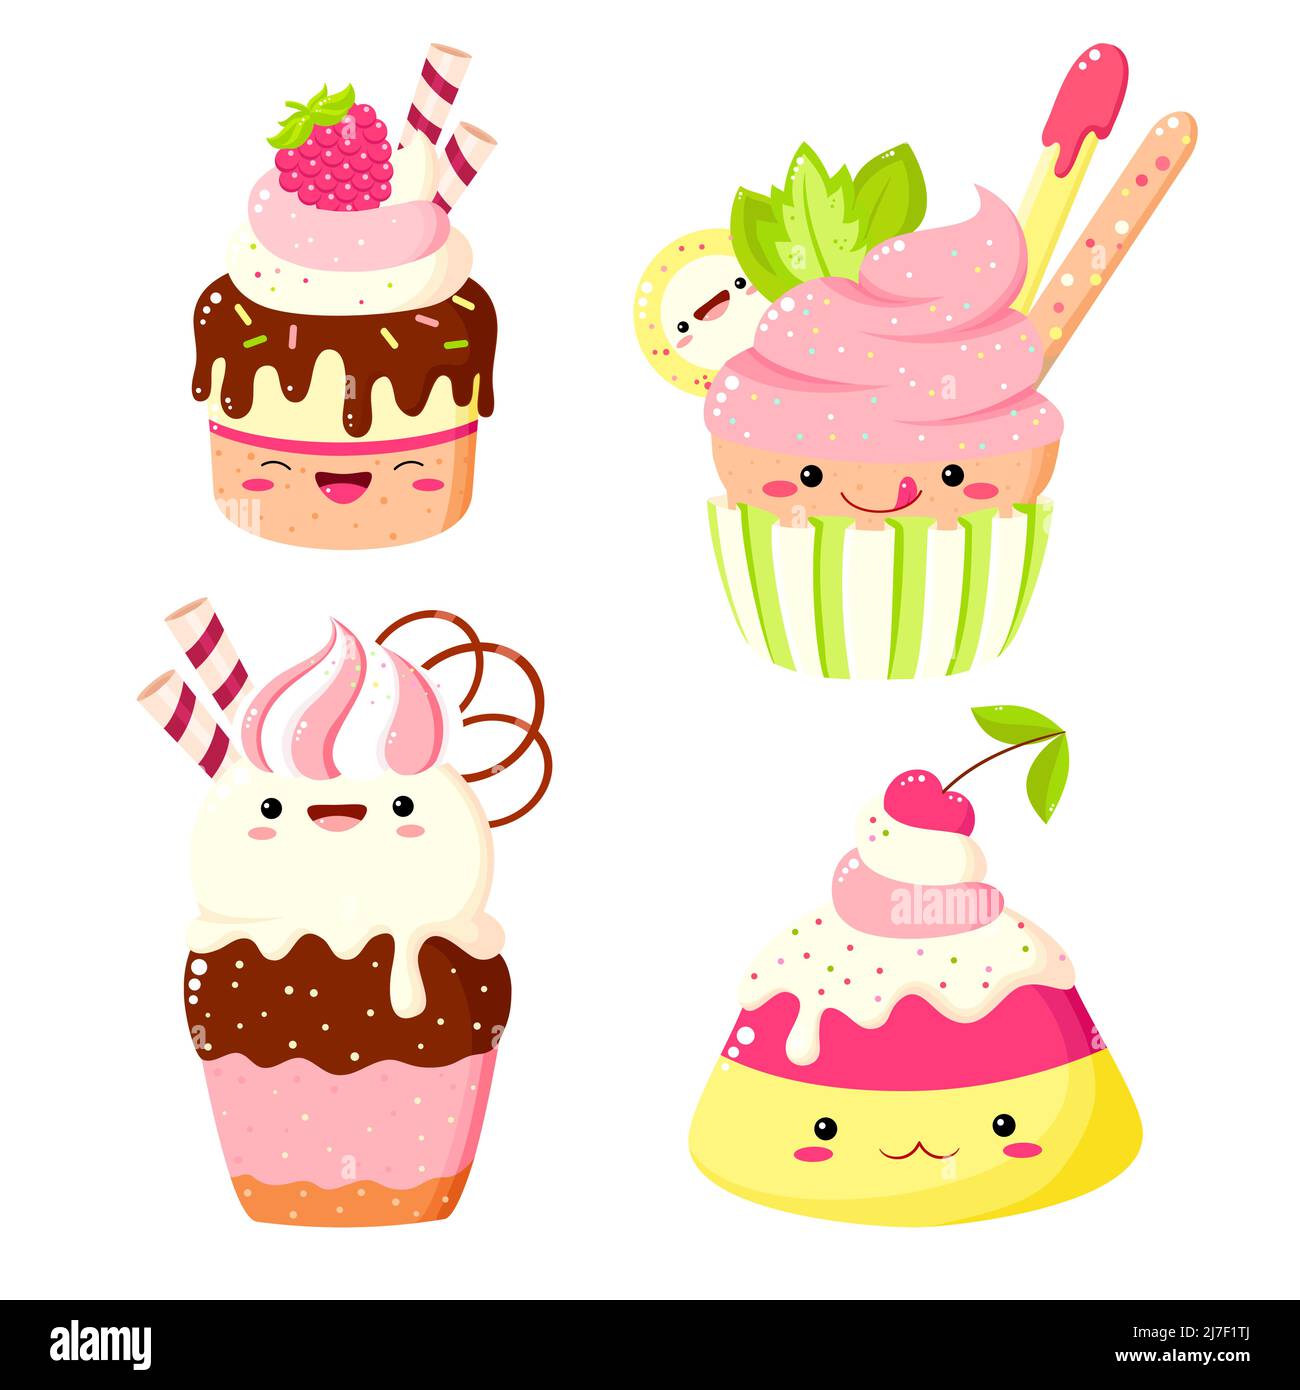 Ensemble de gâteau mignon, muffin, cupcake dans le style kawaii avec visage souriant et joues roses pour un joli motif. Illustration vectorielle EPS8 Illustration de Vecteur